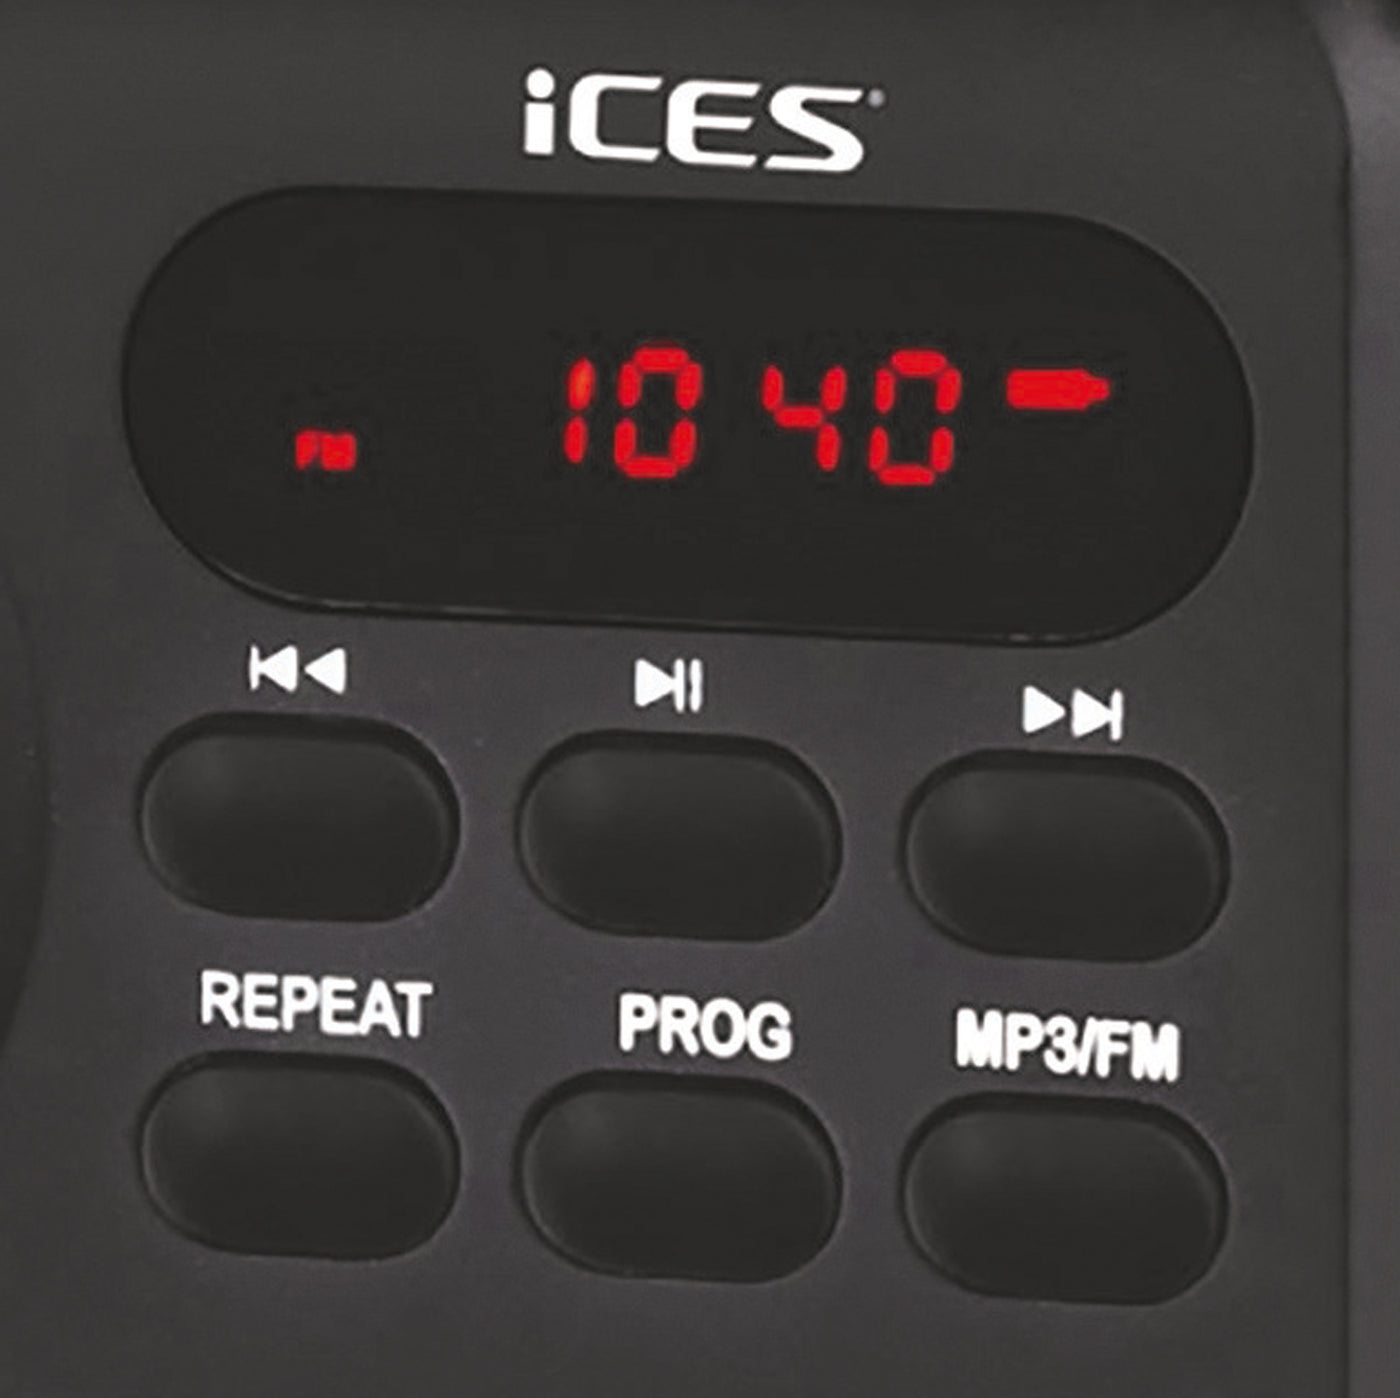 Ices IMPR-112 Black - Radio FM portable rechargeable - Noir